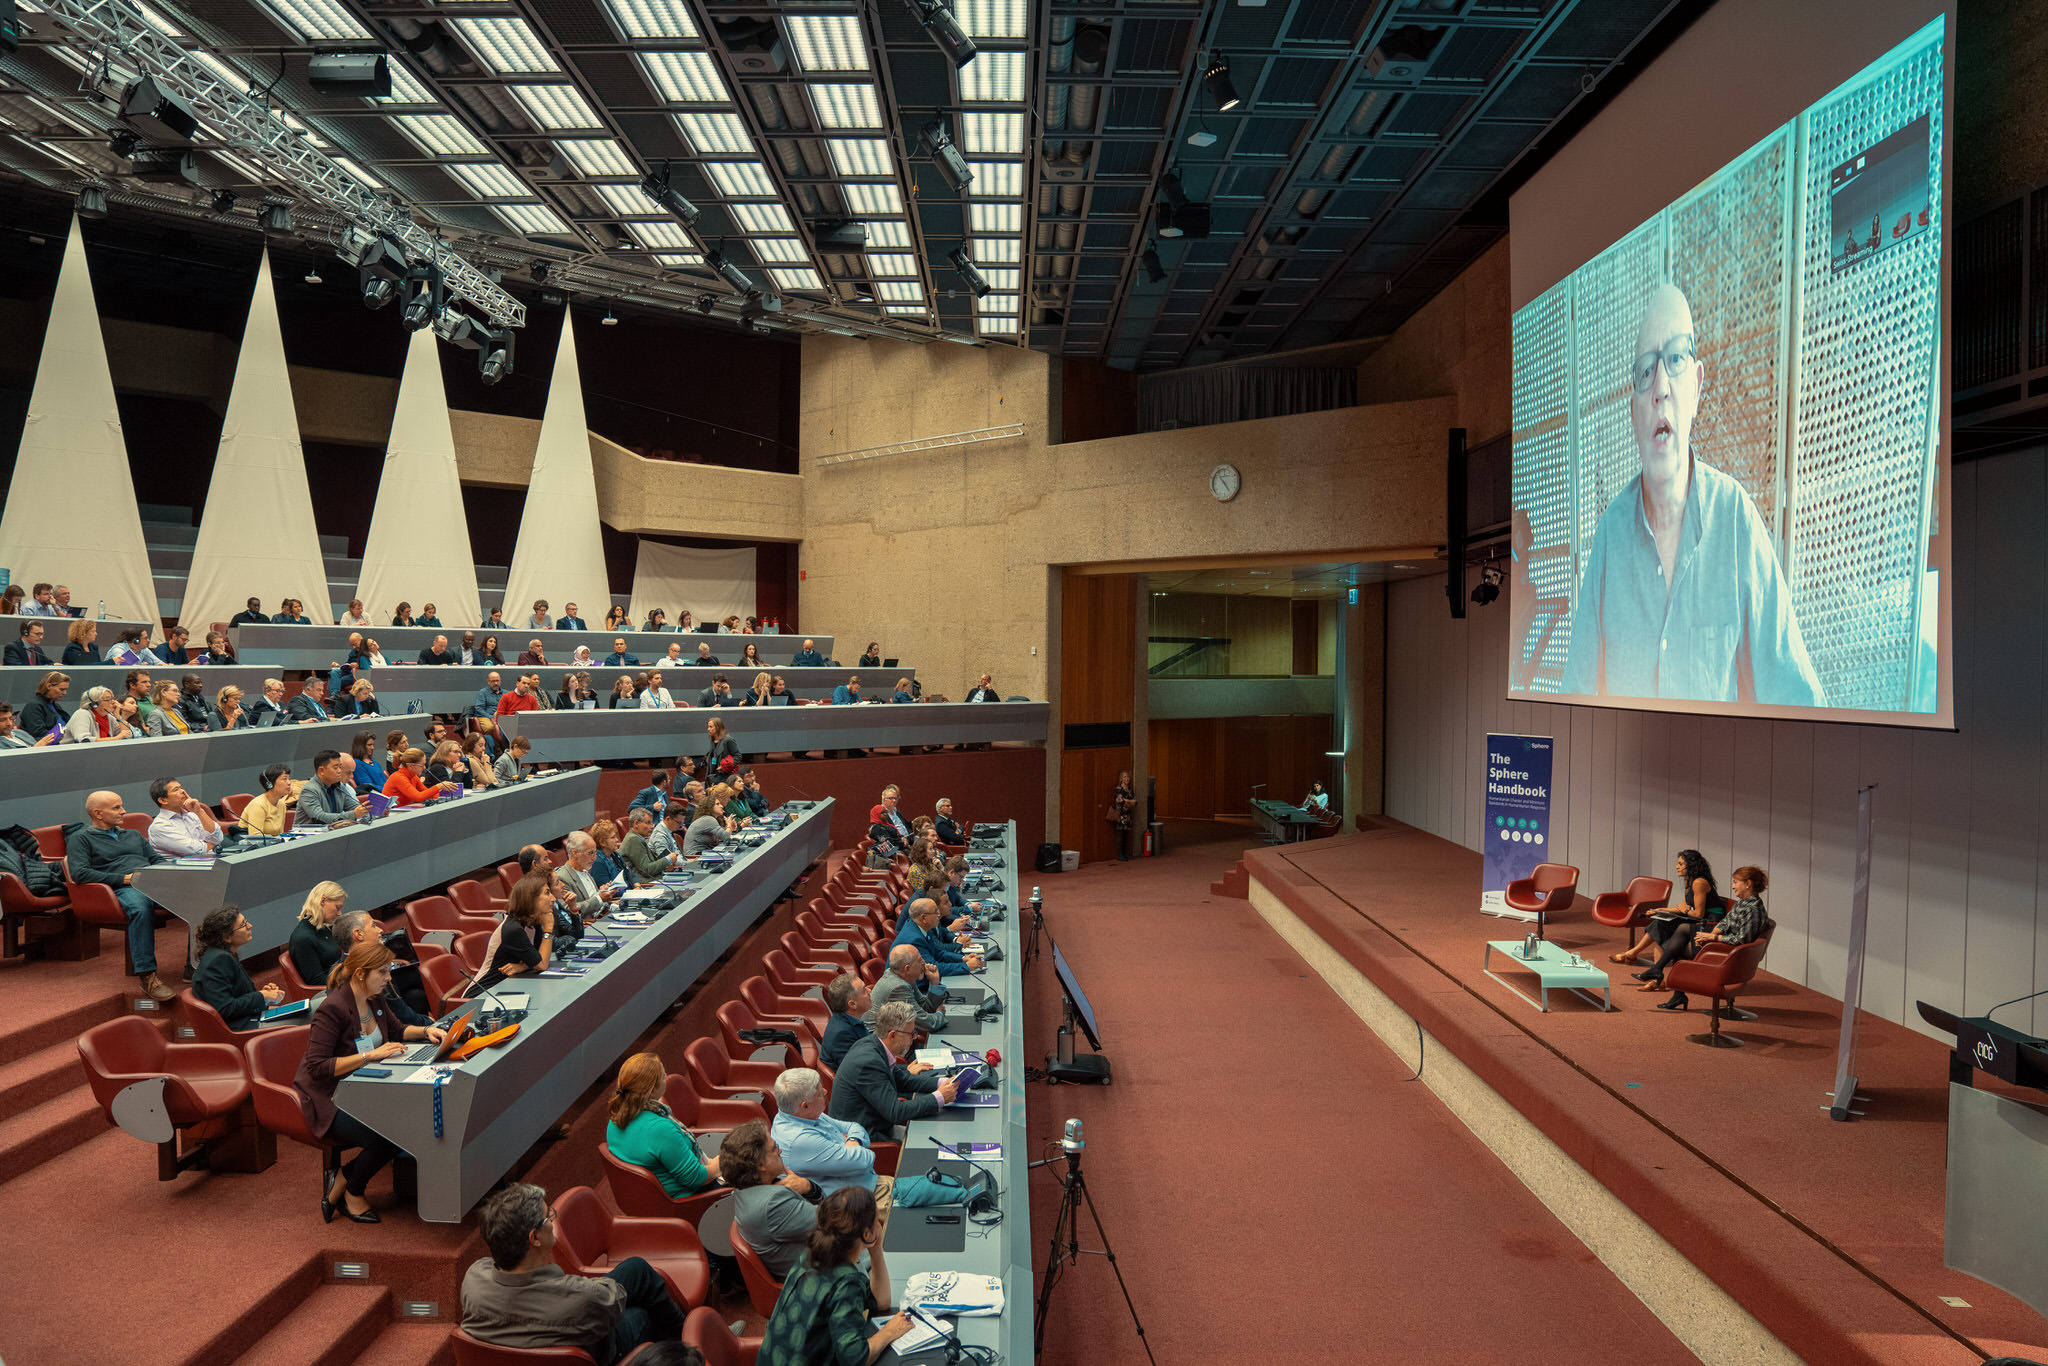 Participantes del lanzamiento del Manual Esfera en Ginebra escuchan a Peter Walker dar el discurso de apertura en una transmisión de vídeo en directo